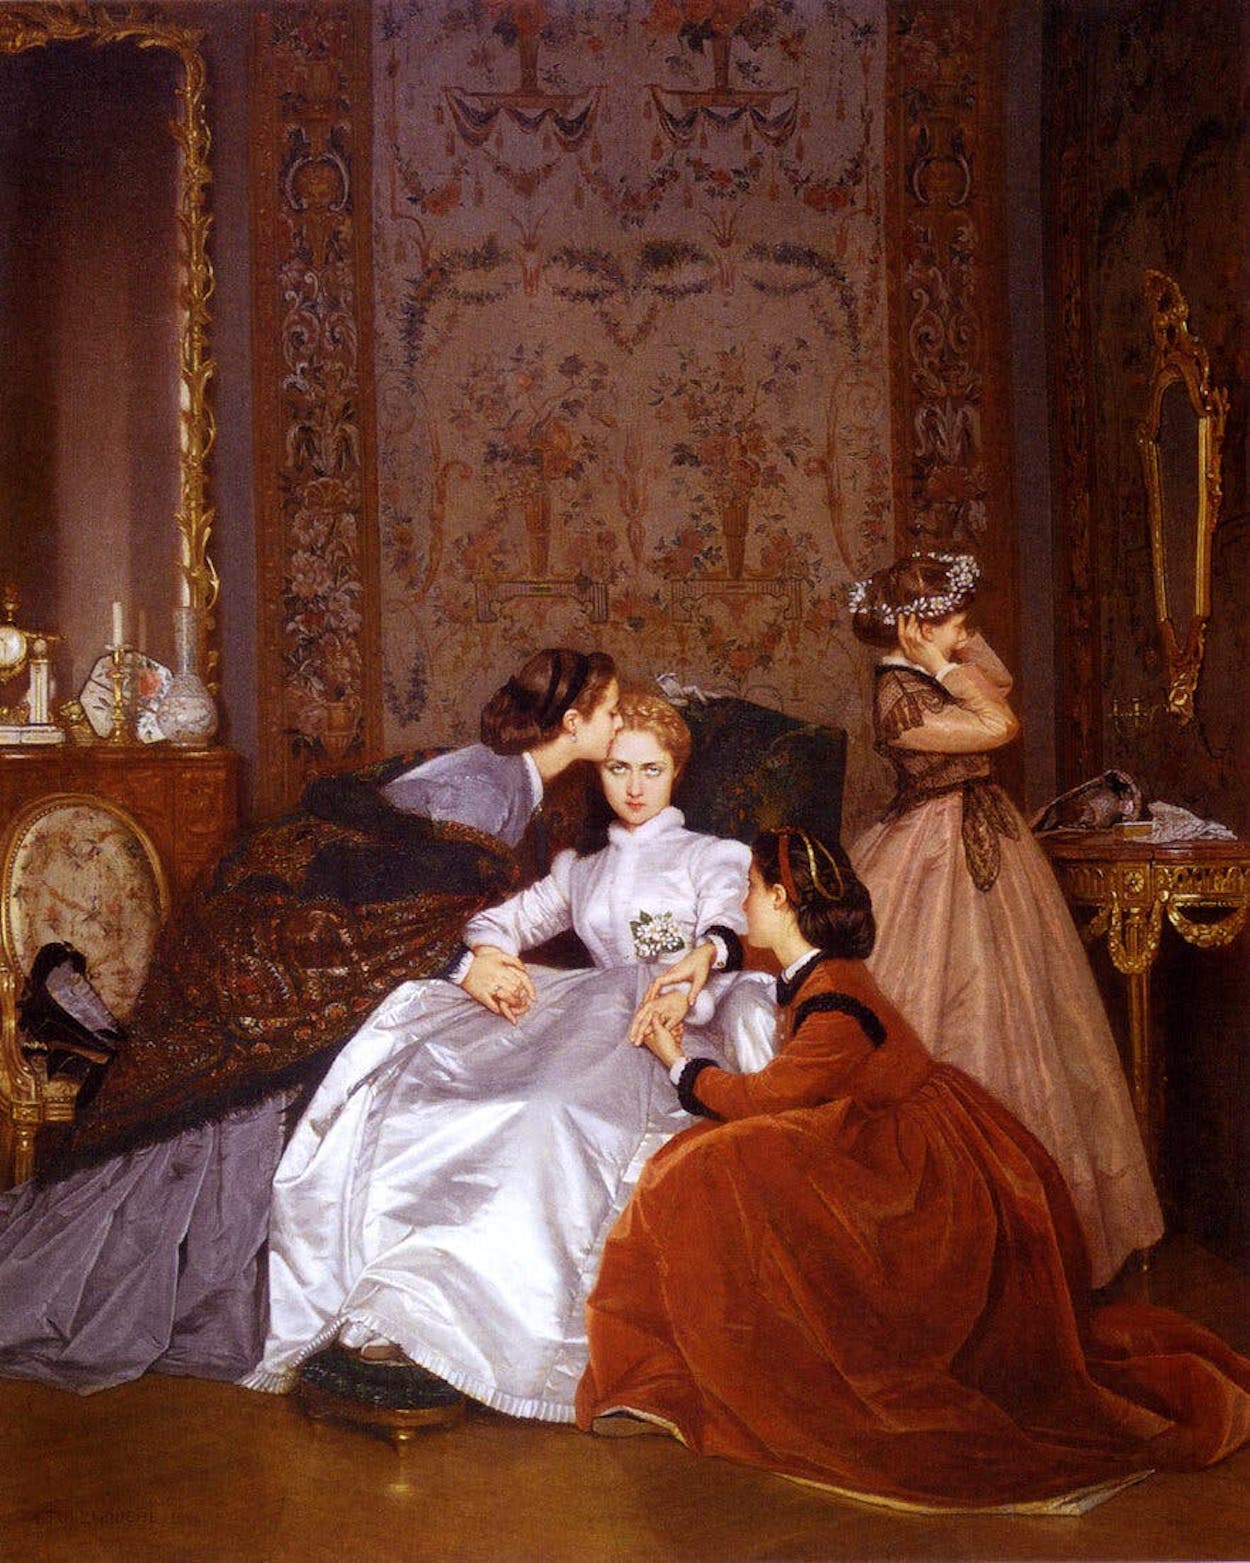 La novia indecisa by Auguste Toulmouche - 1866 - 65 x 54 cm Colección privada